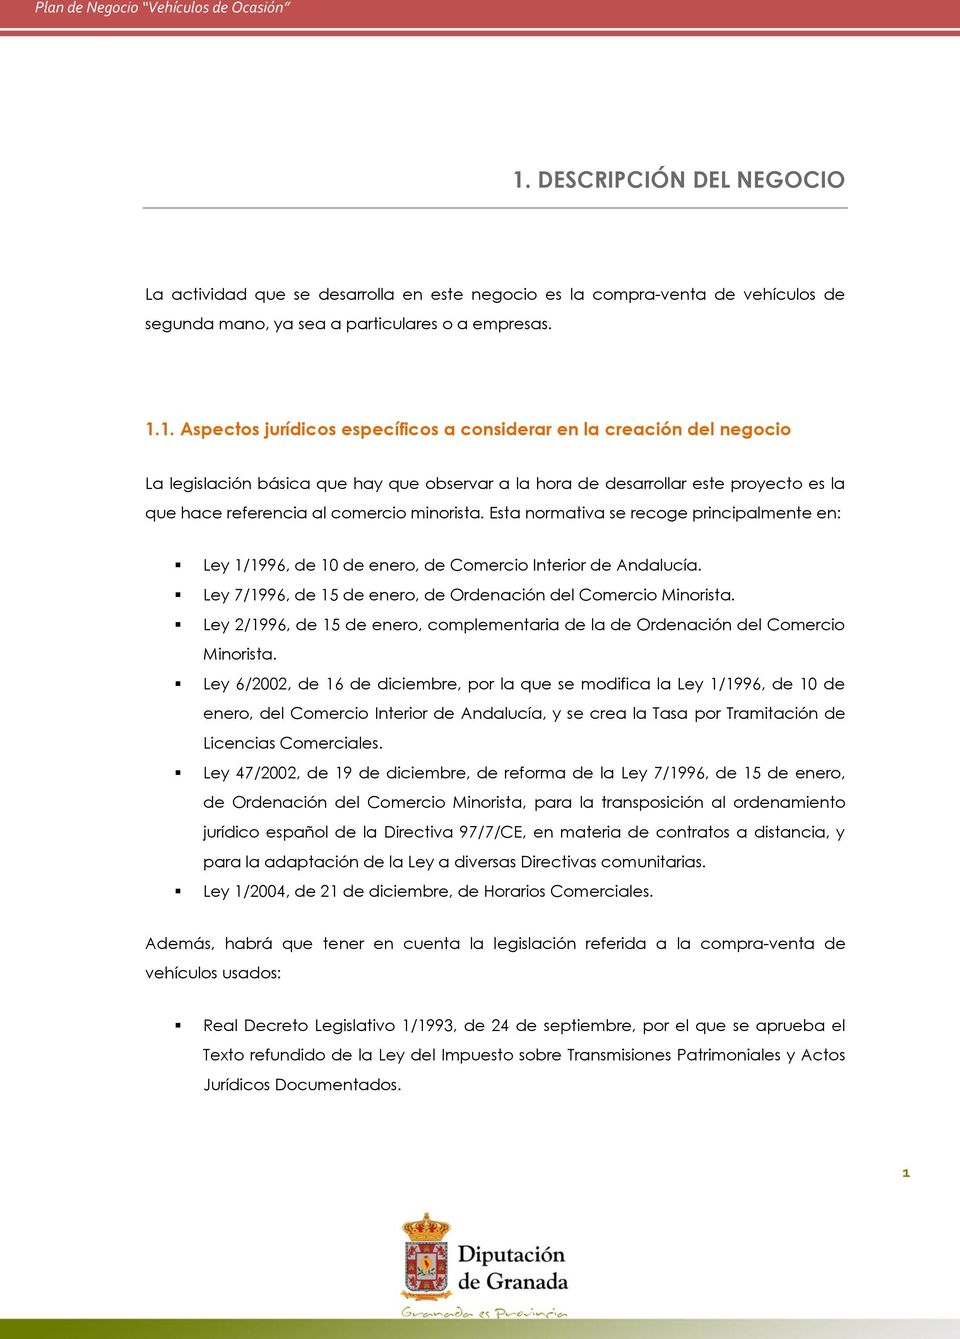 Esta normativa se recoge principalmente en: Ley 1/1996, de 10 de enero, de Comercio Interior de Andalucía. Ley 7/1996, de 15 de enero, de Ordenación del Comercio Minorista.